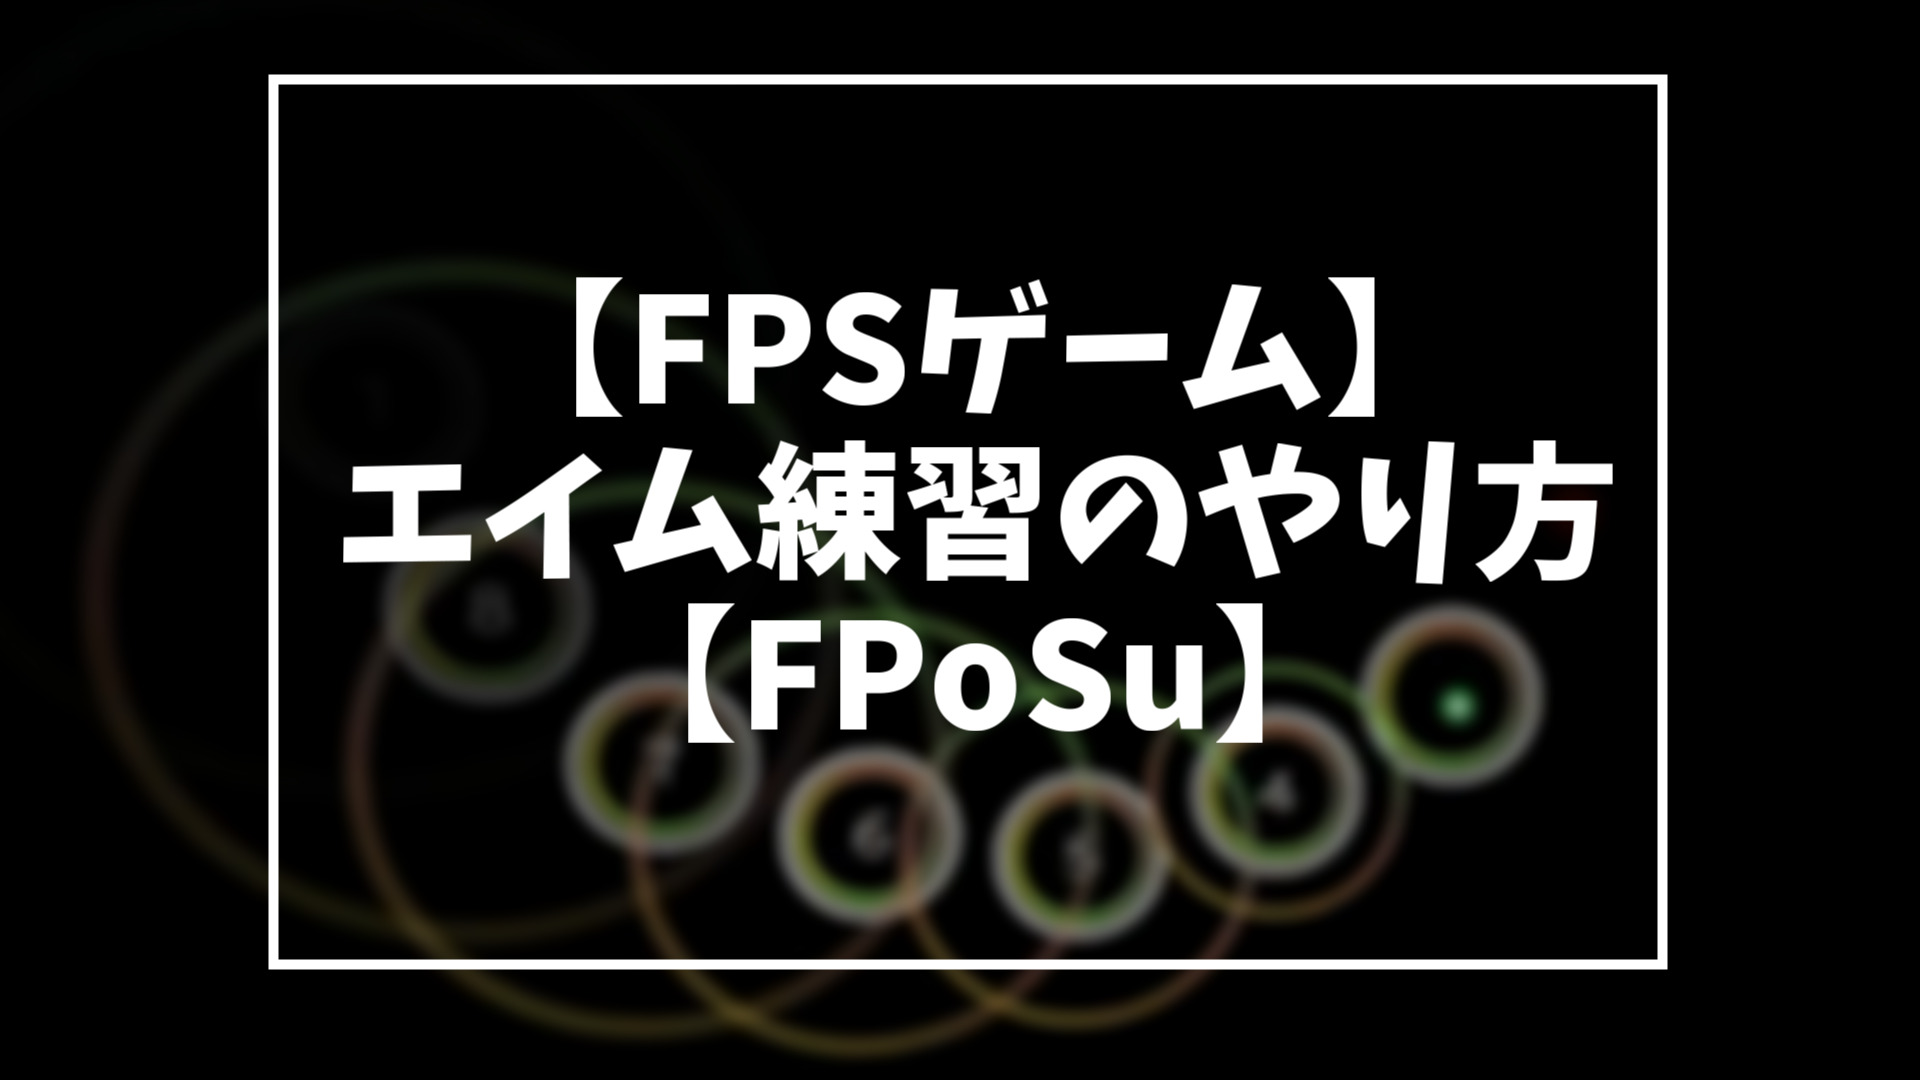 Fposu エイム練習のやり方 導入 極振り